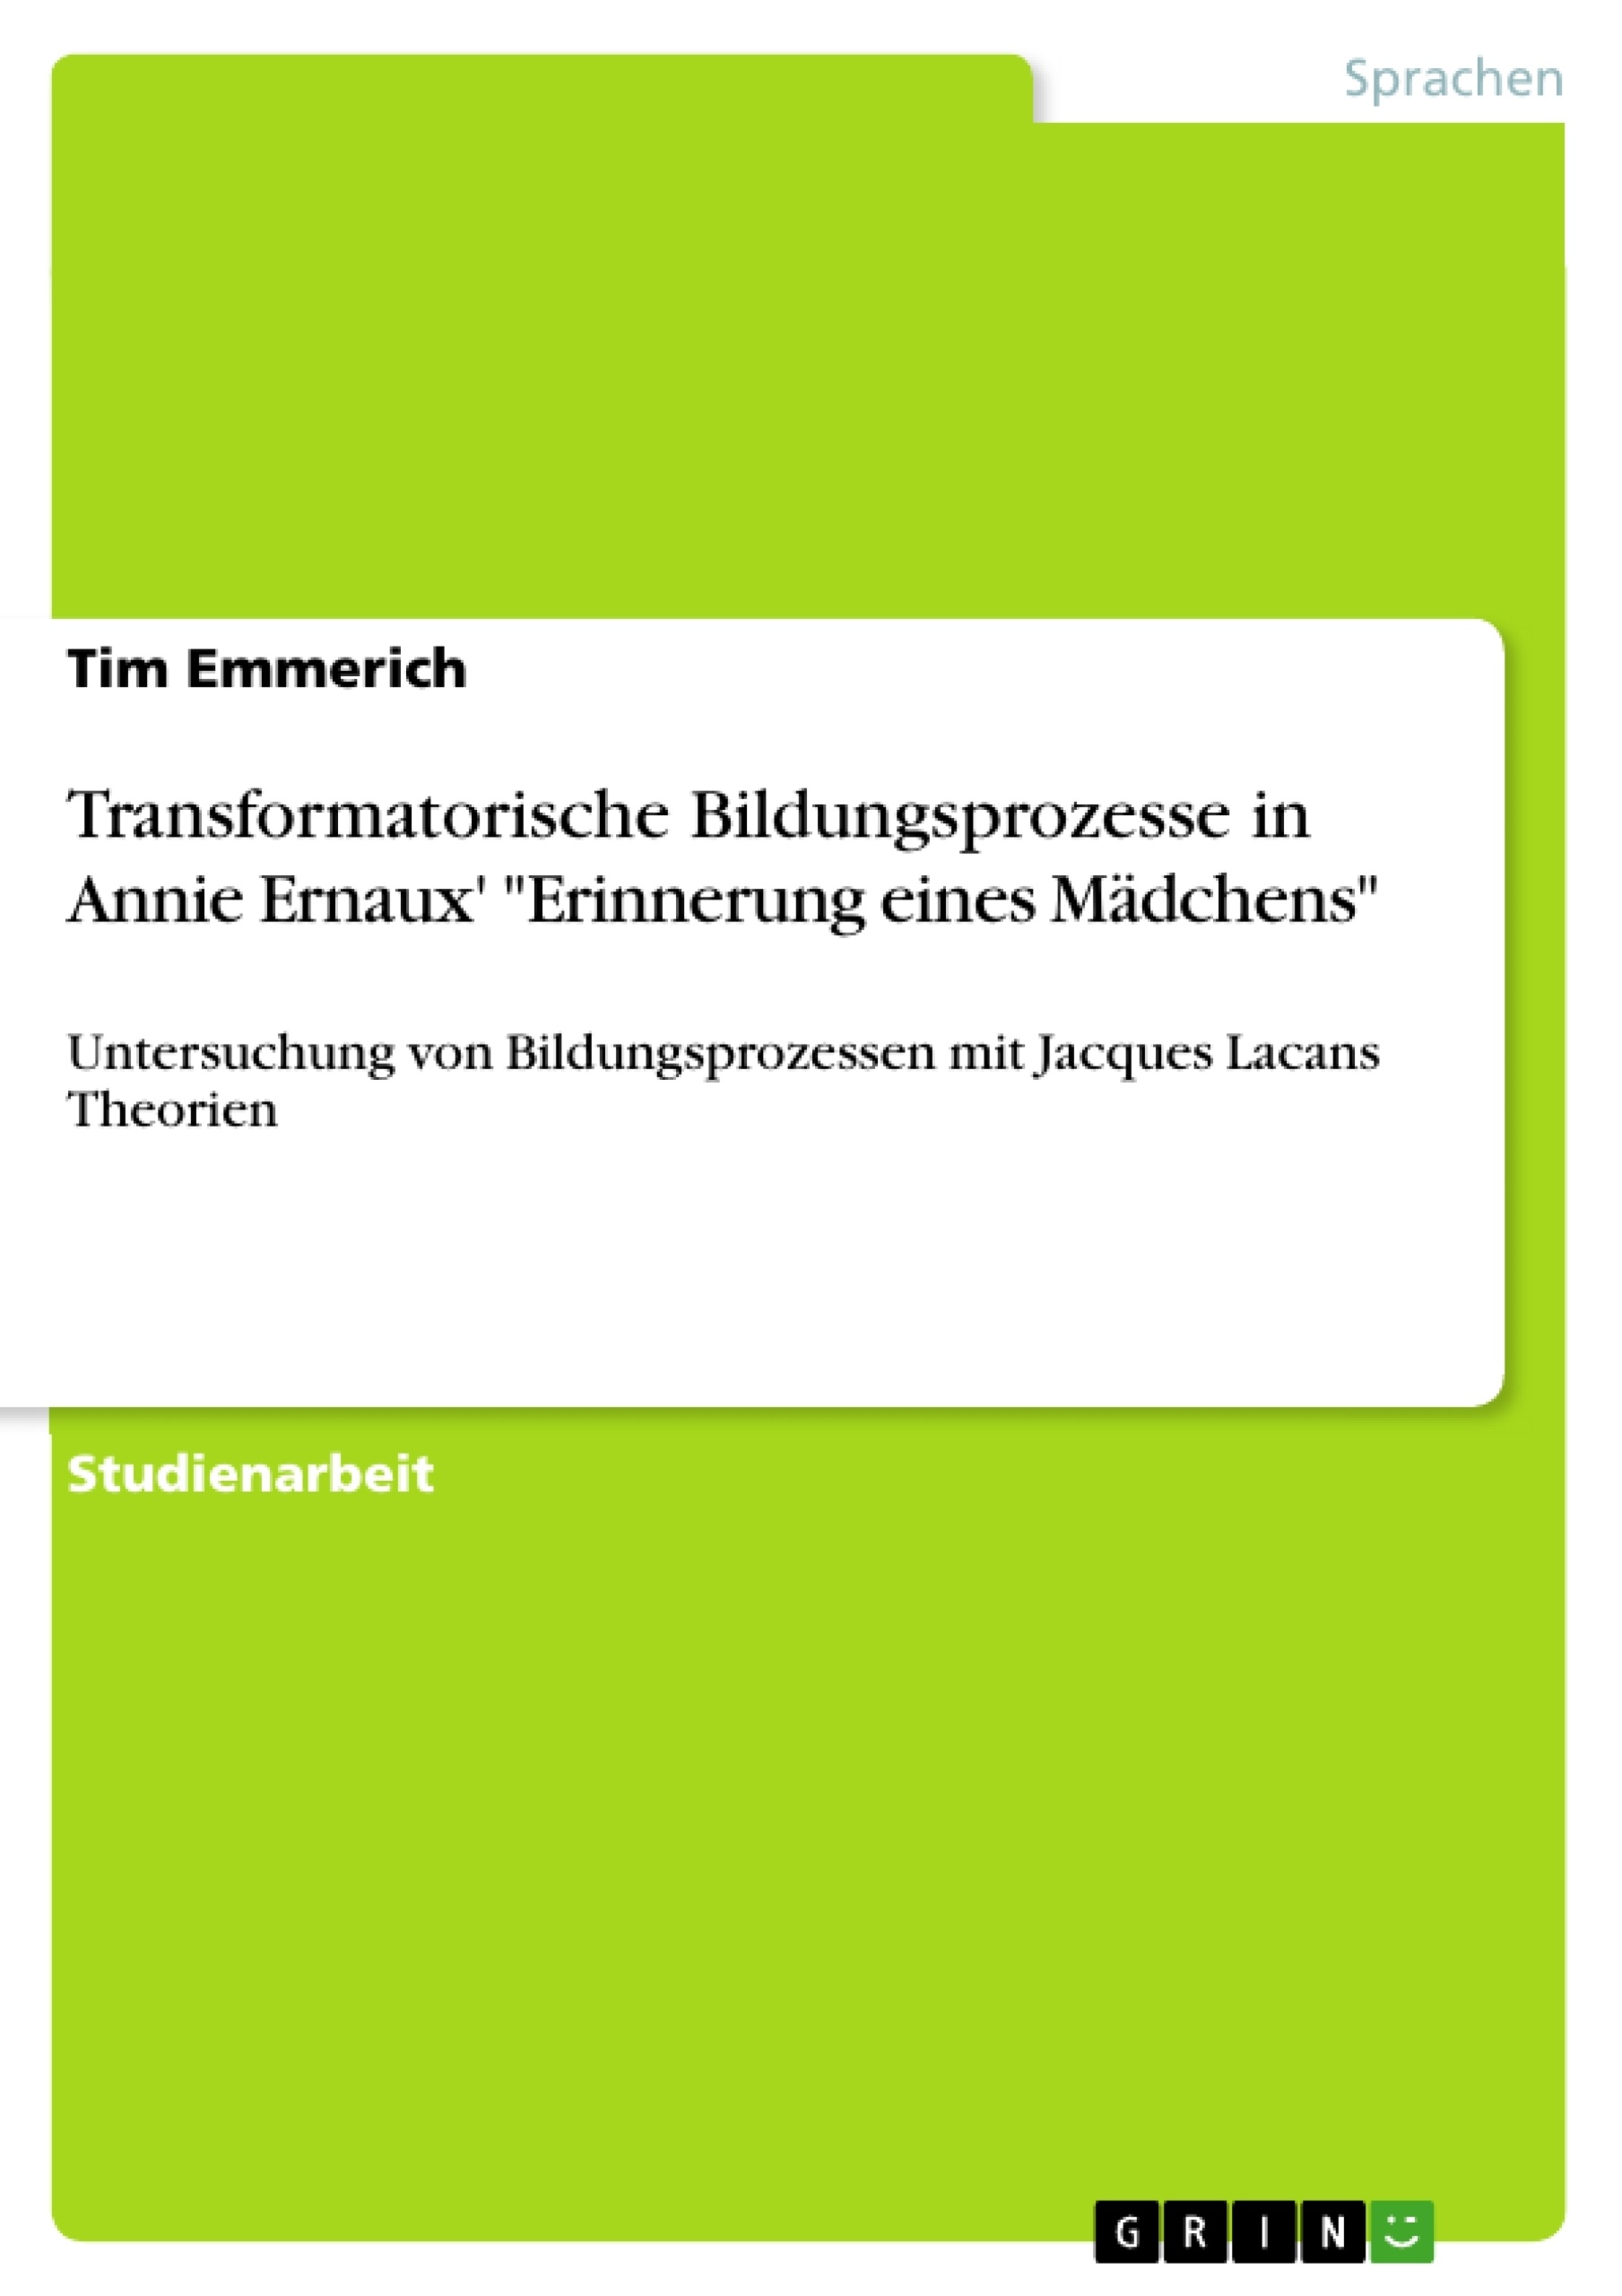 Título: Transformatorische Bildungsprozesse in Annie Ernaux' "Erinnerung eines Mädchens"